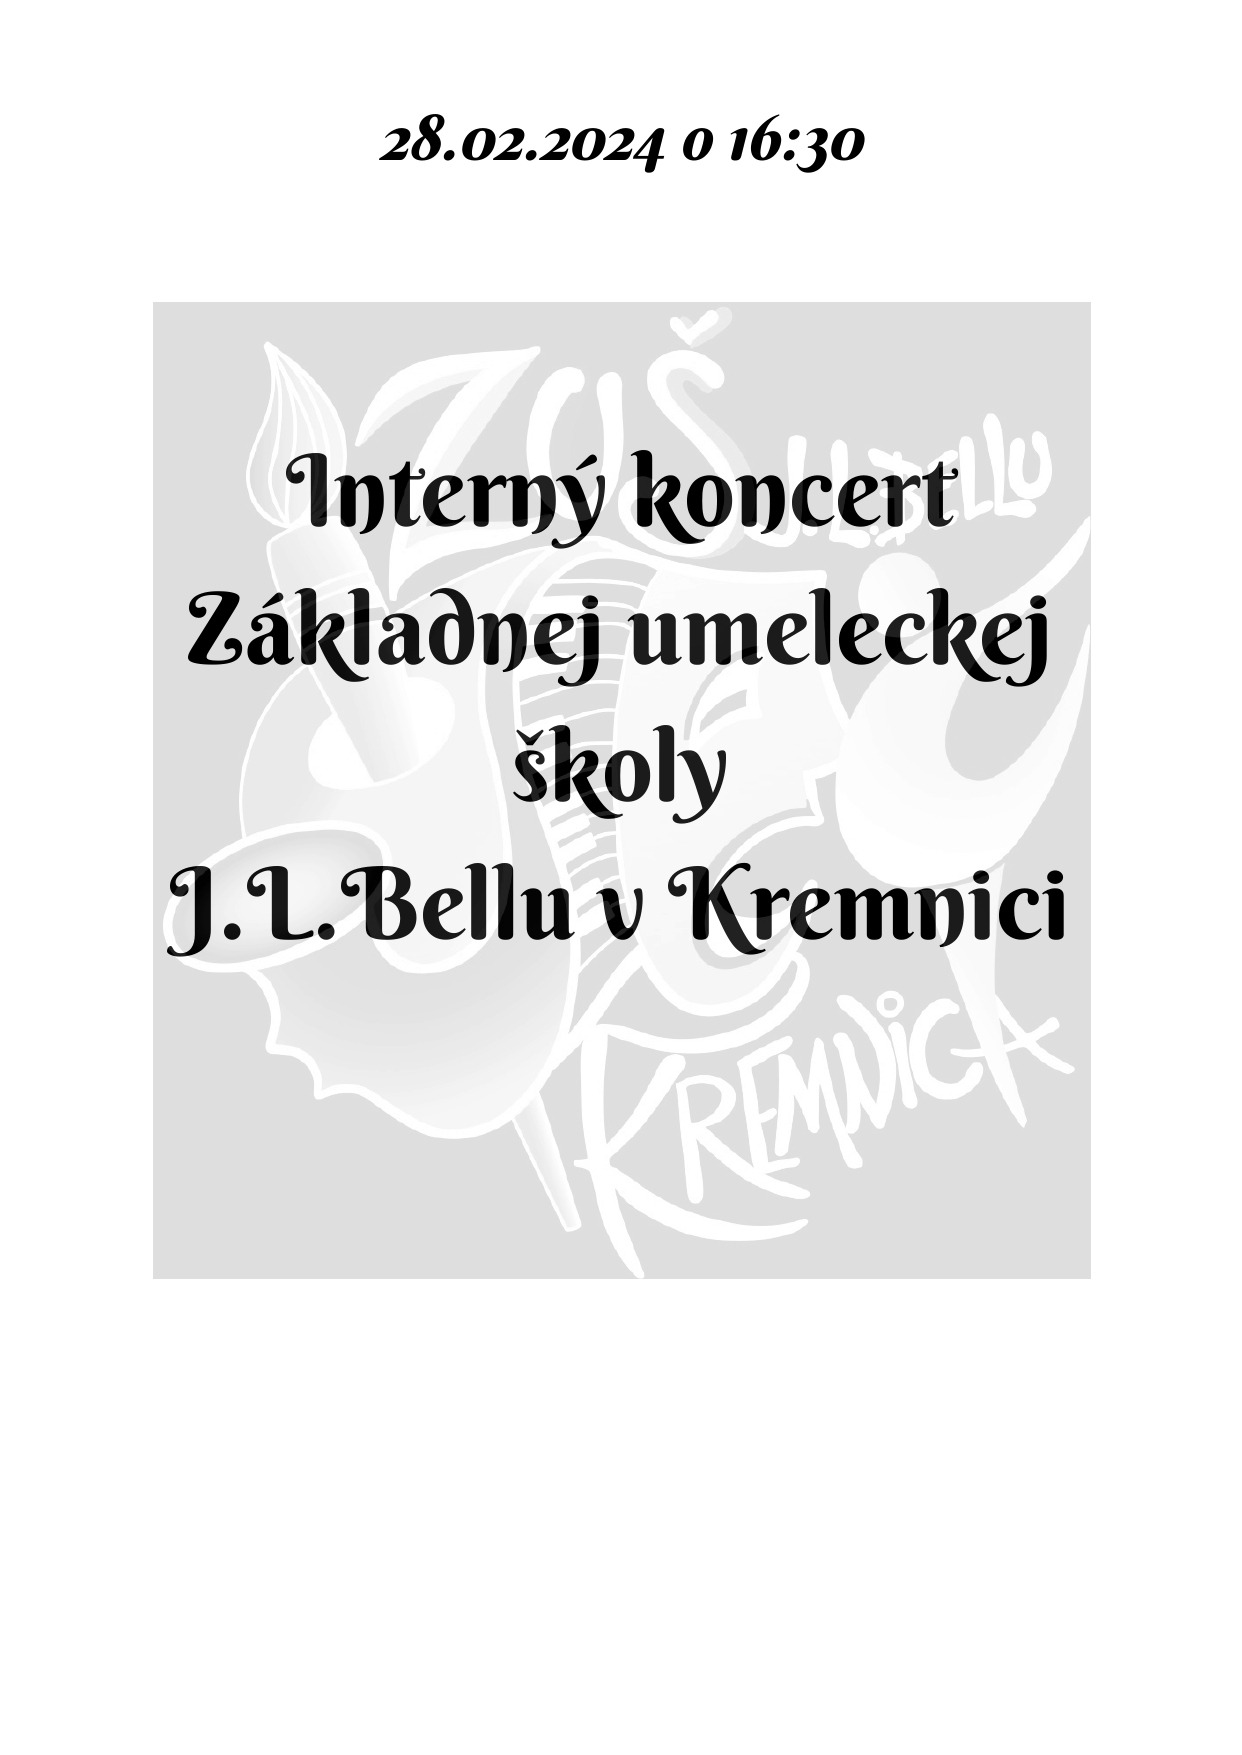 Pozvánka na interný koncert dnes 28.02. o 16:30 v sále ZUŠ, alebo online - Obrázok 1